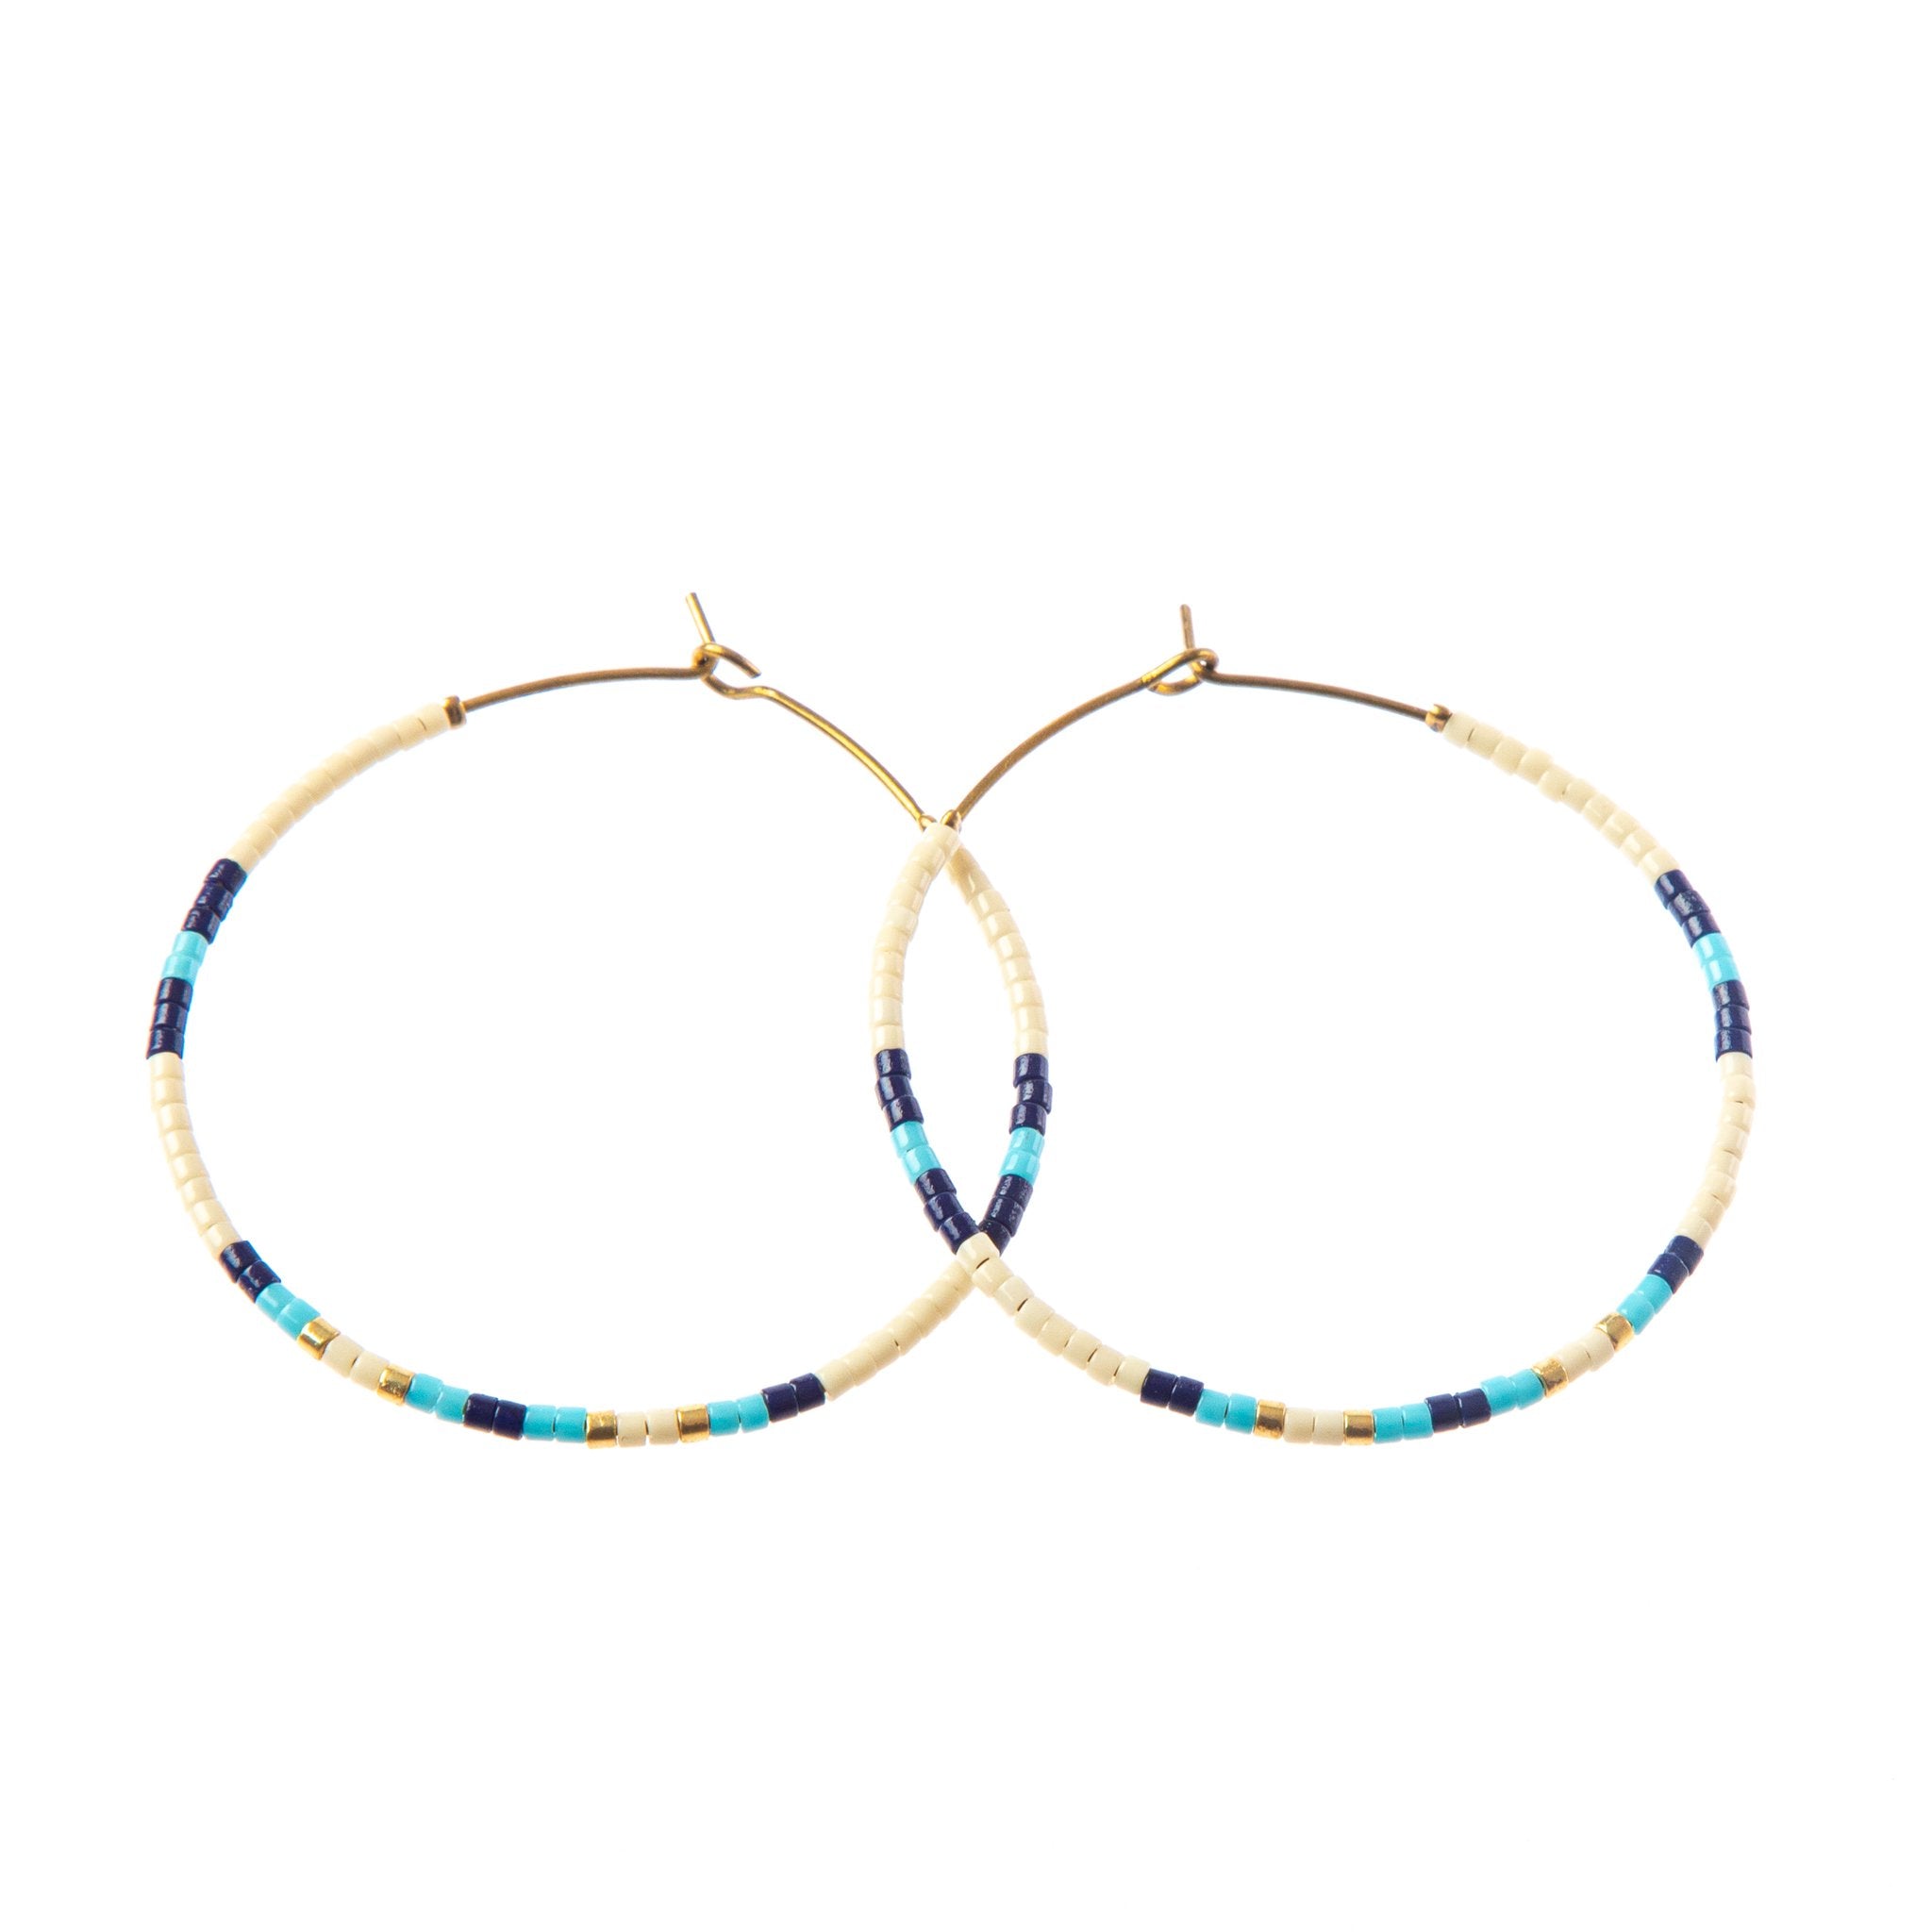 Baja hoop earrings - cream/navy/light blue